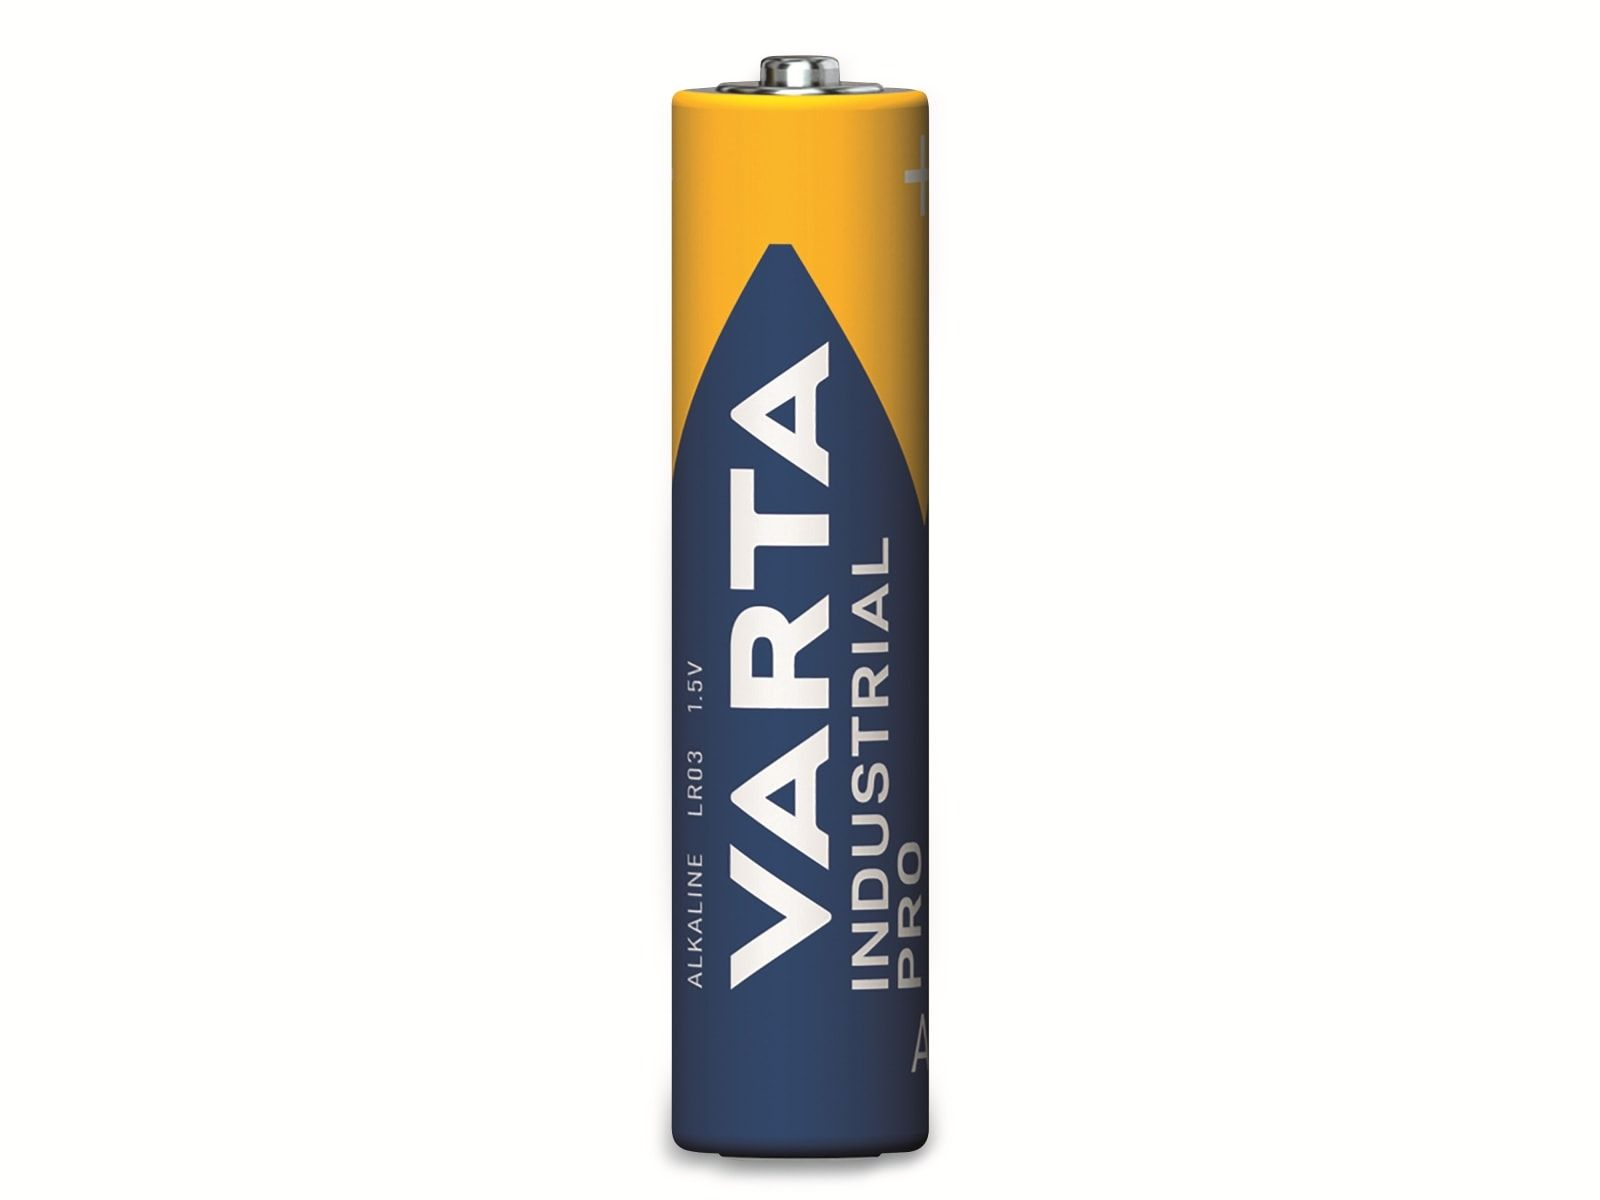 Batterie 1.5V, Batterie LR03, AAA, Micro, Alkaline, Industrial Alkaline VARTA Pro, 10 Stück